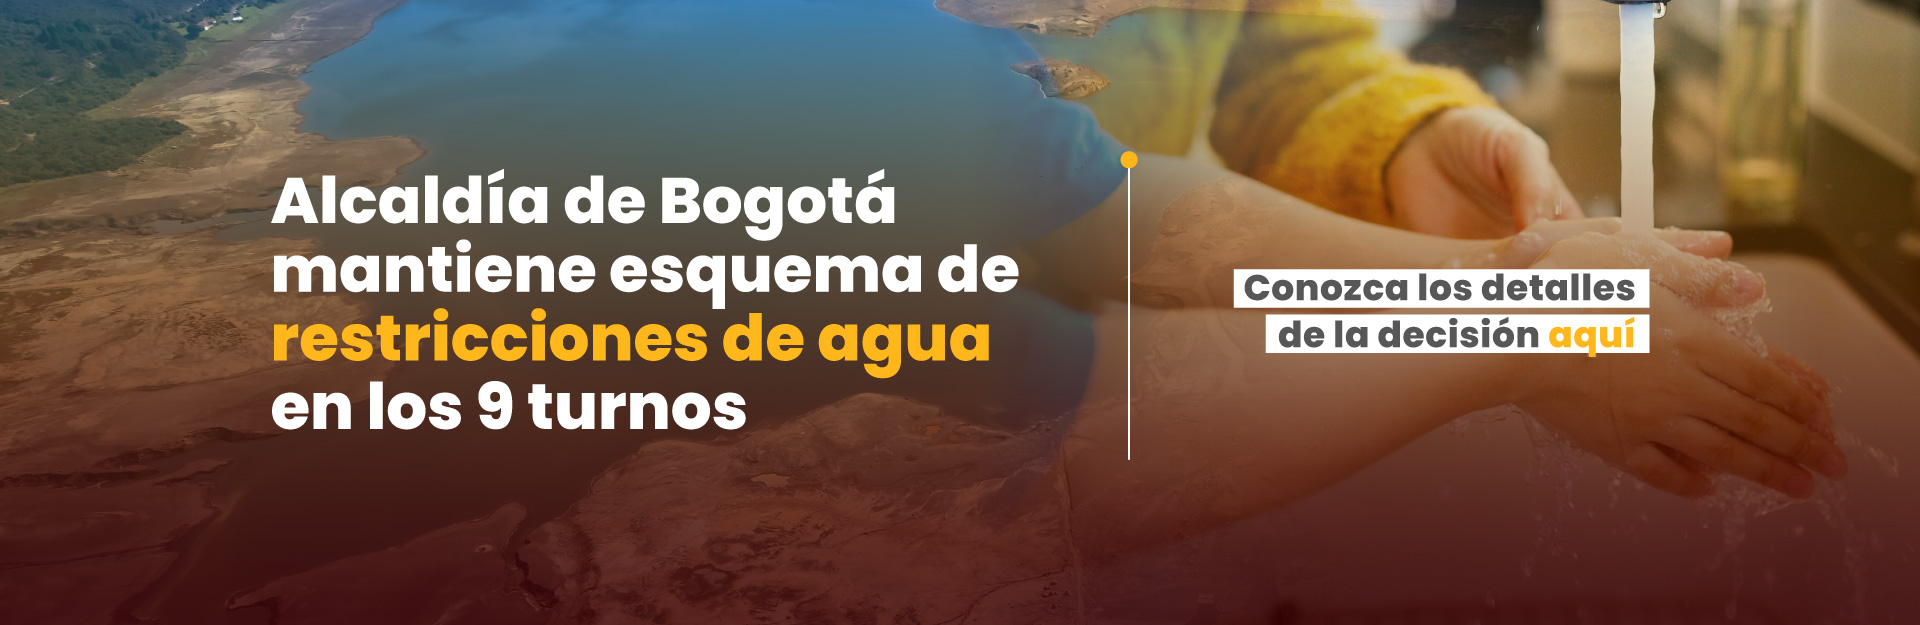 Alcaldía de Bogotá mantiene esquema de restricciones de agua en los 9 turnos